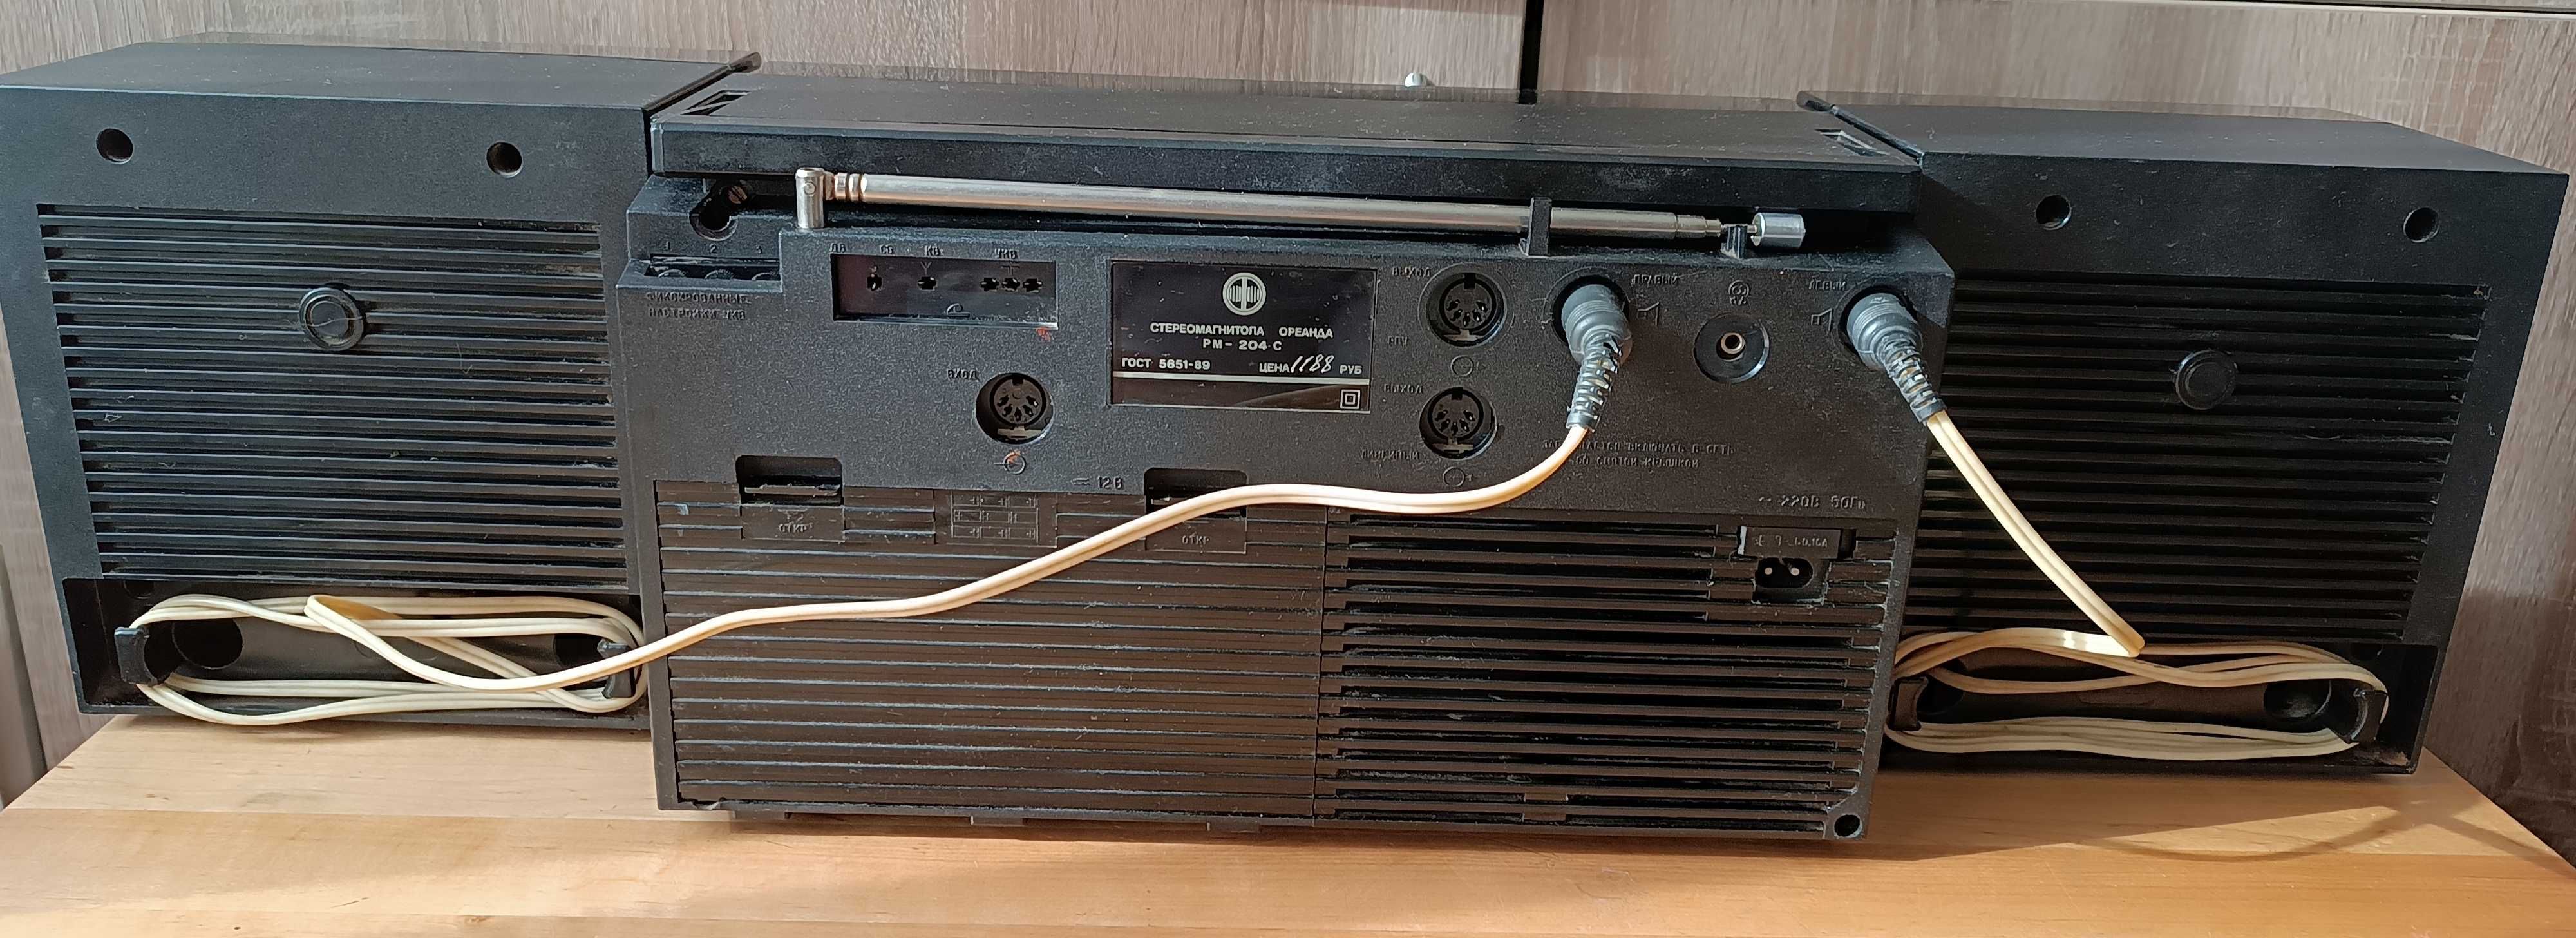 Радио, магнитофон Ореанда РМ-204С